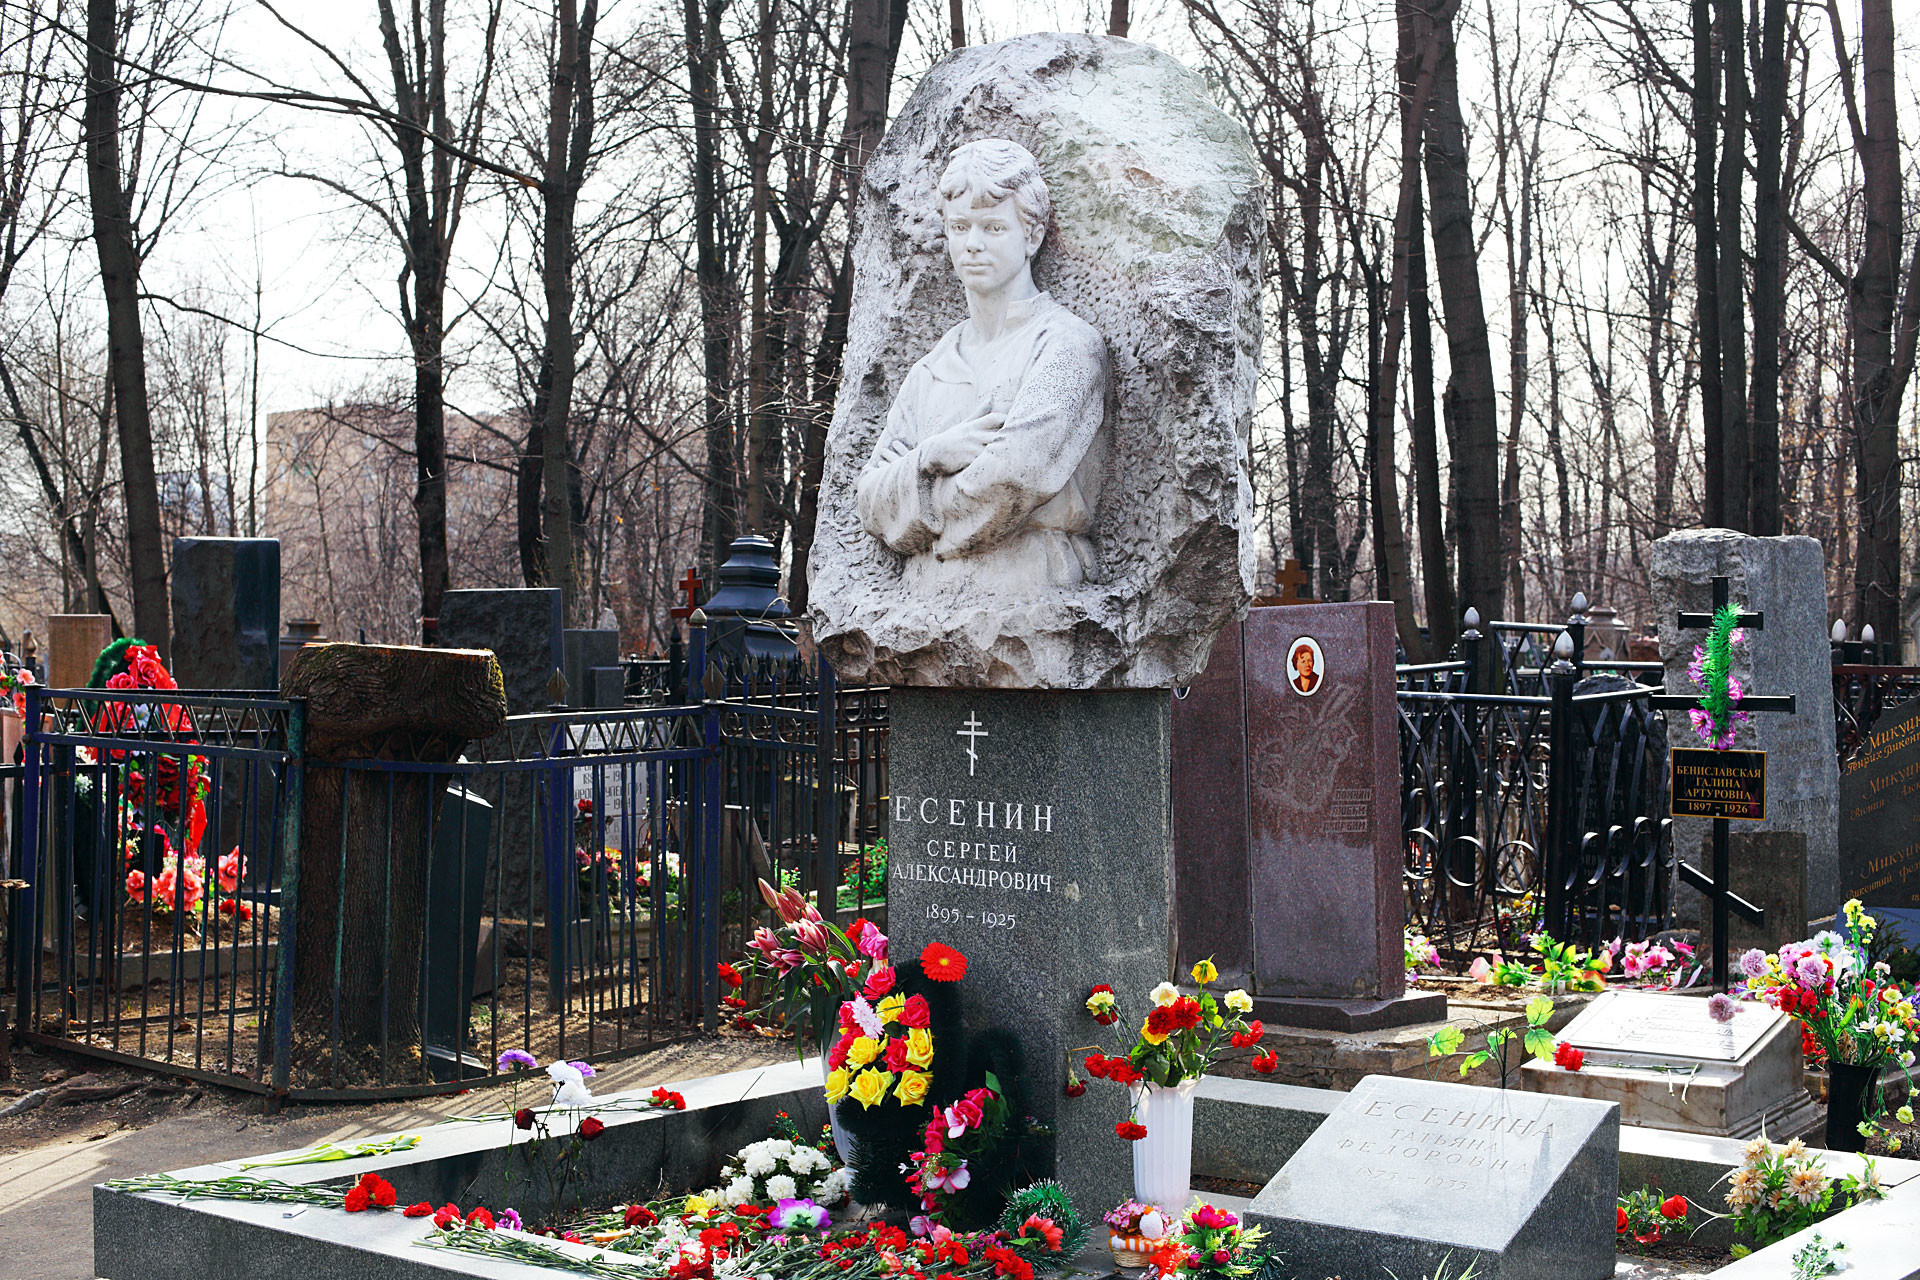 Nisan Sergey Yesenstein di pemakaman Vagankovskoye, Moskow, Rusia. Salib hitam dengan karangan bunga hijau dan ungu di sisi kiri ada di makam Galina Benislavskaya.